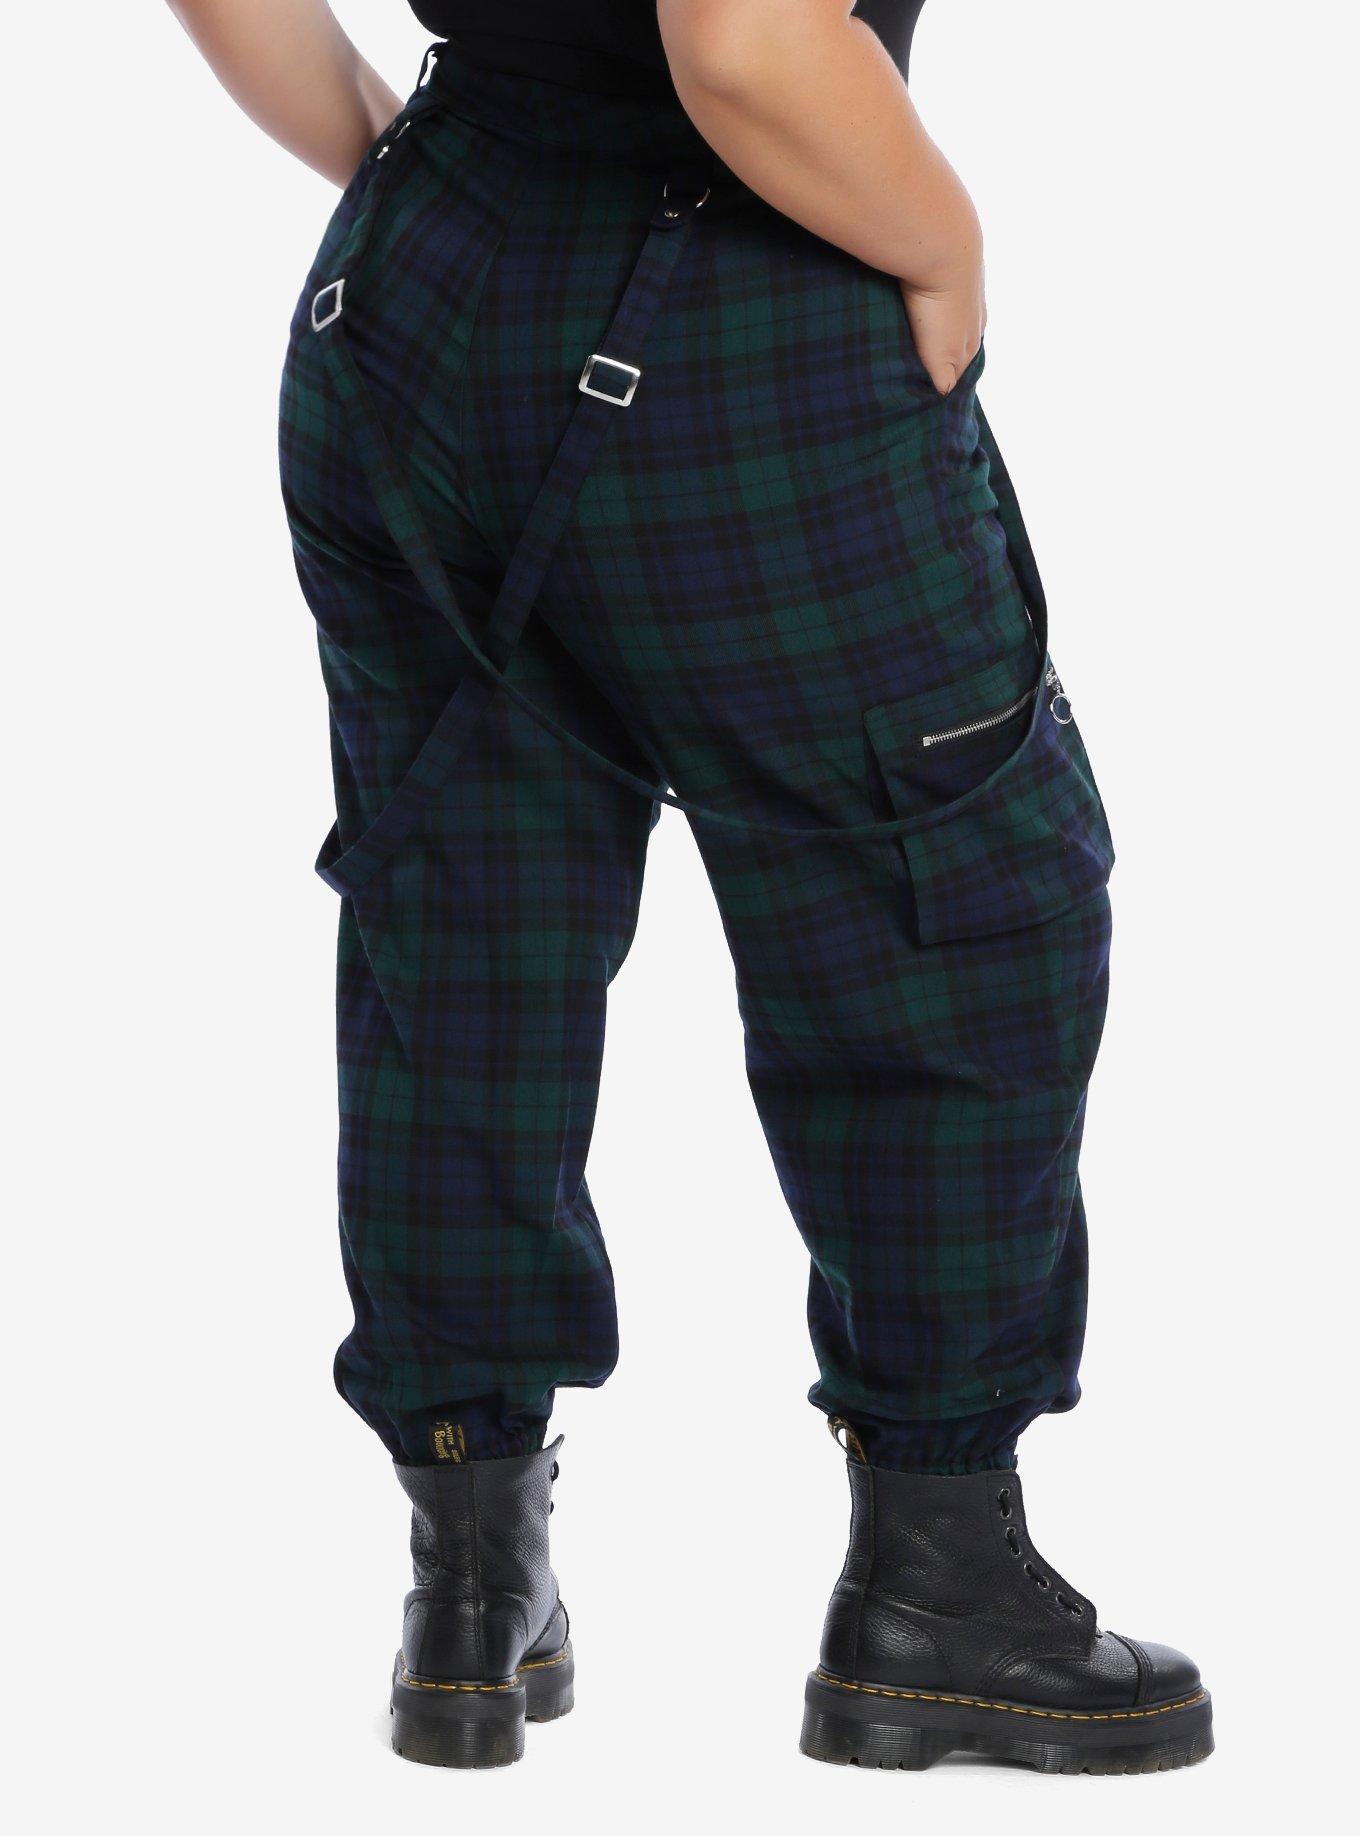 Green & Blue Plaid Strap Ultra Hi-Rise Jogger Pants Plus Size